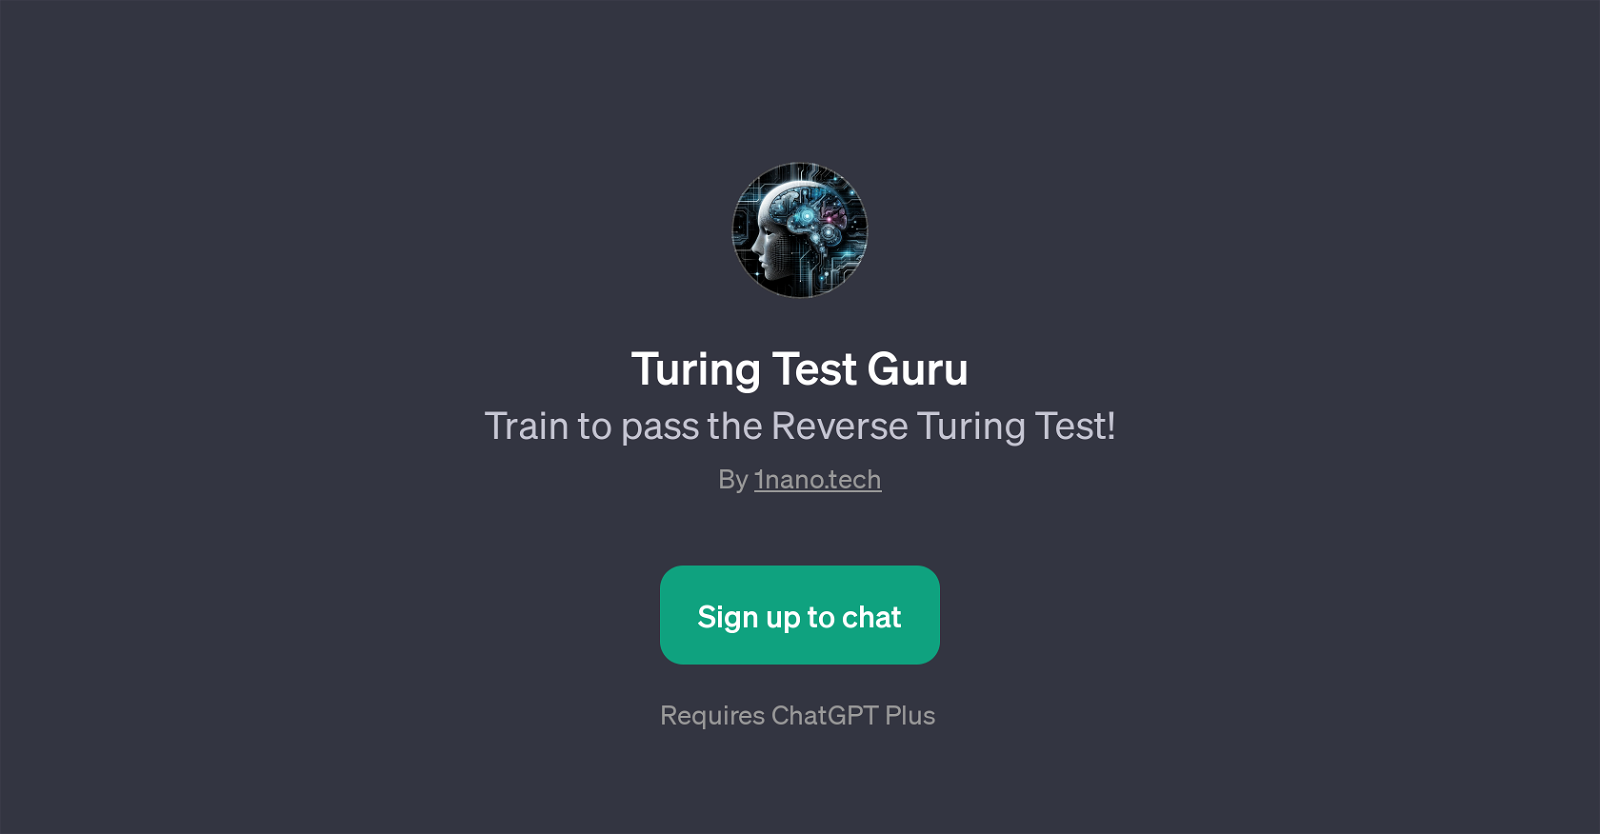 Turing Test Guru website